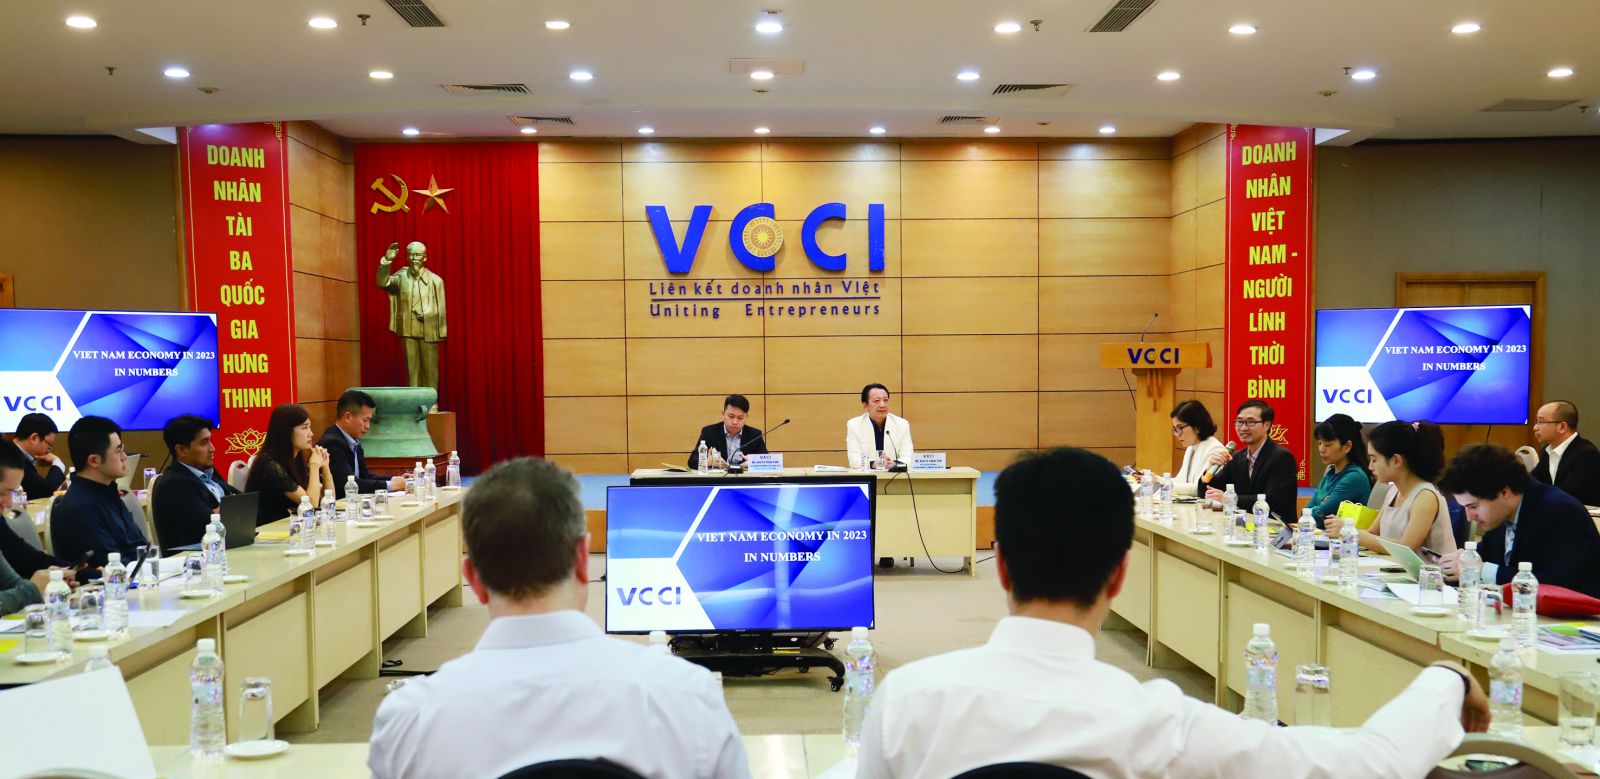  VCCI đang đóng vai trò kết nối các quỹ đầu tư tư nhân quốc tế tìm hiểu thị trường Việt Nam.